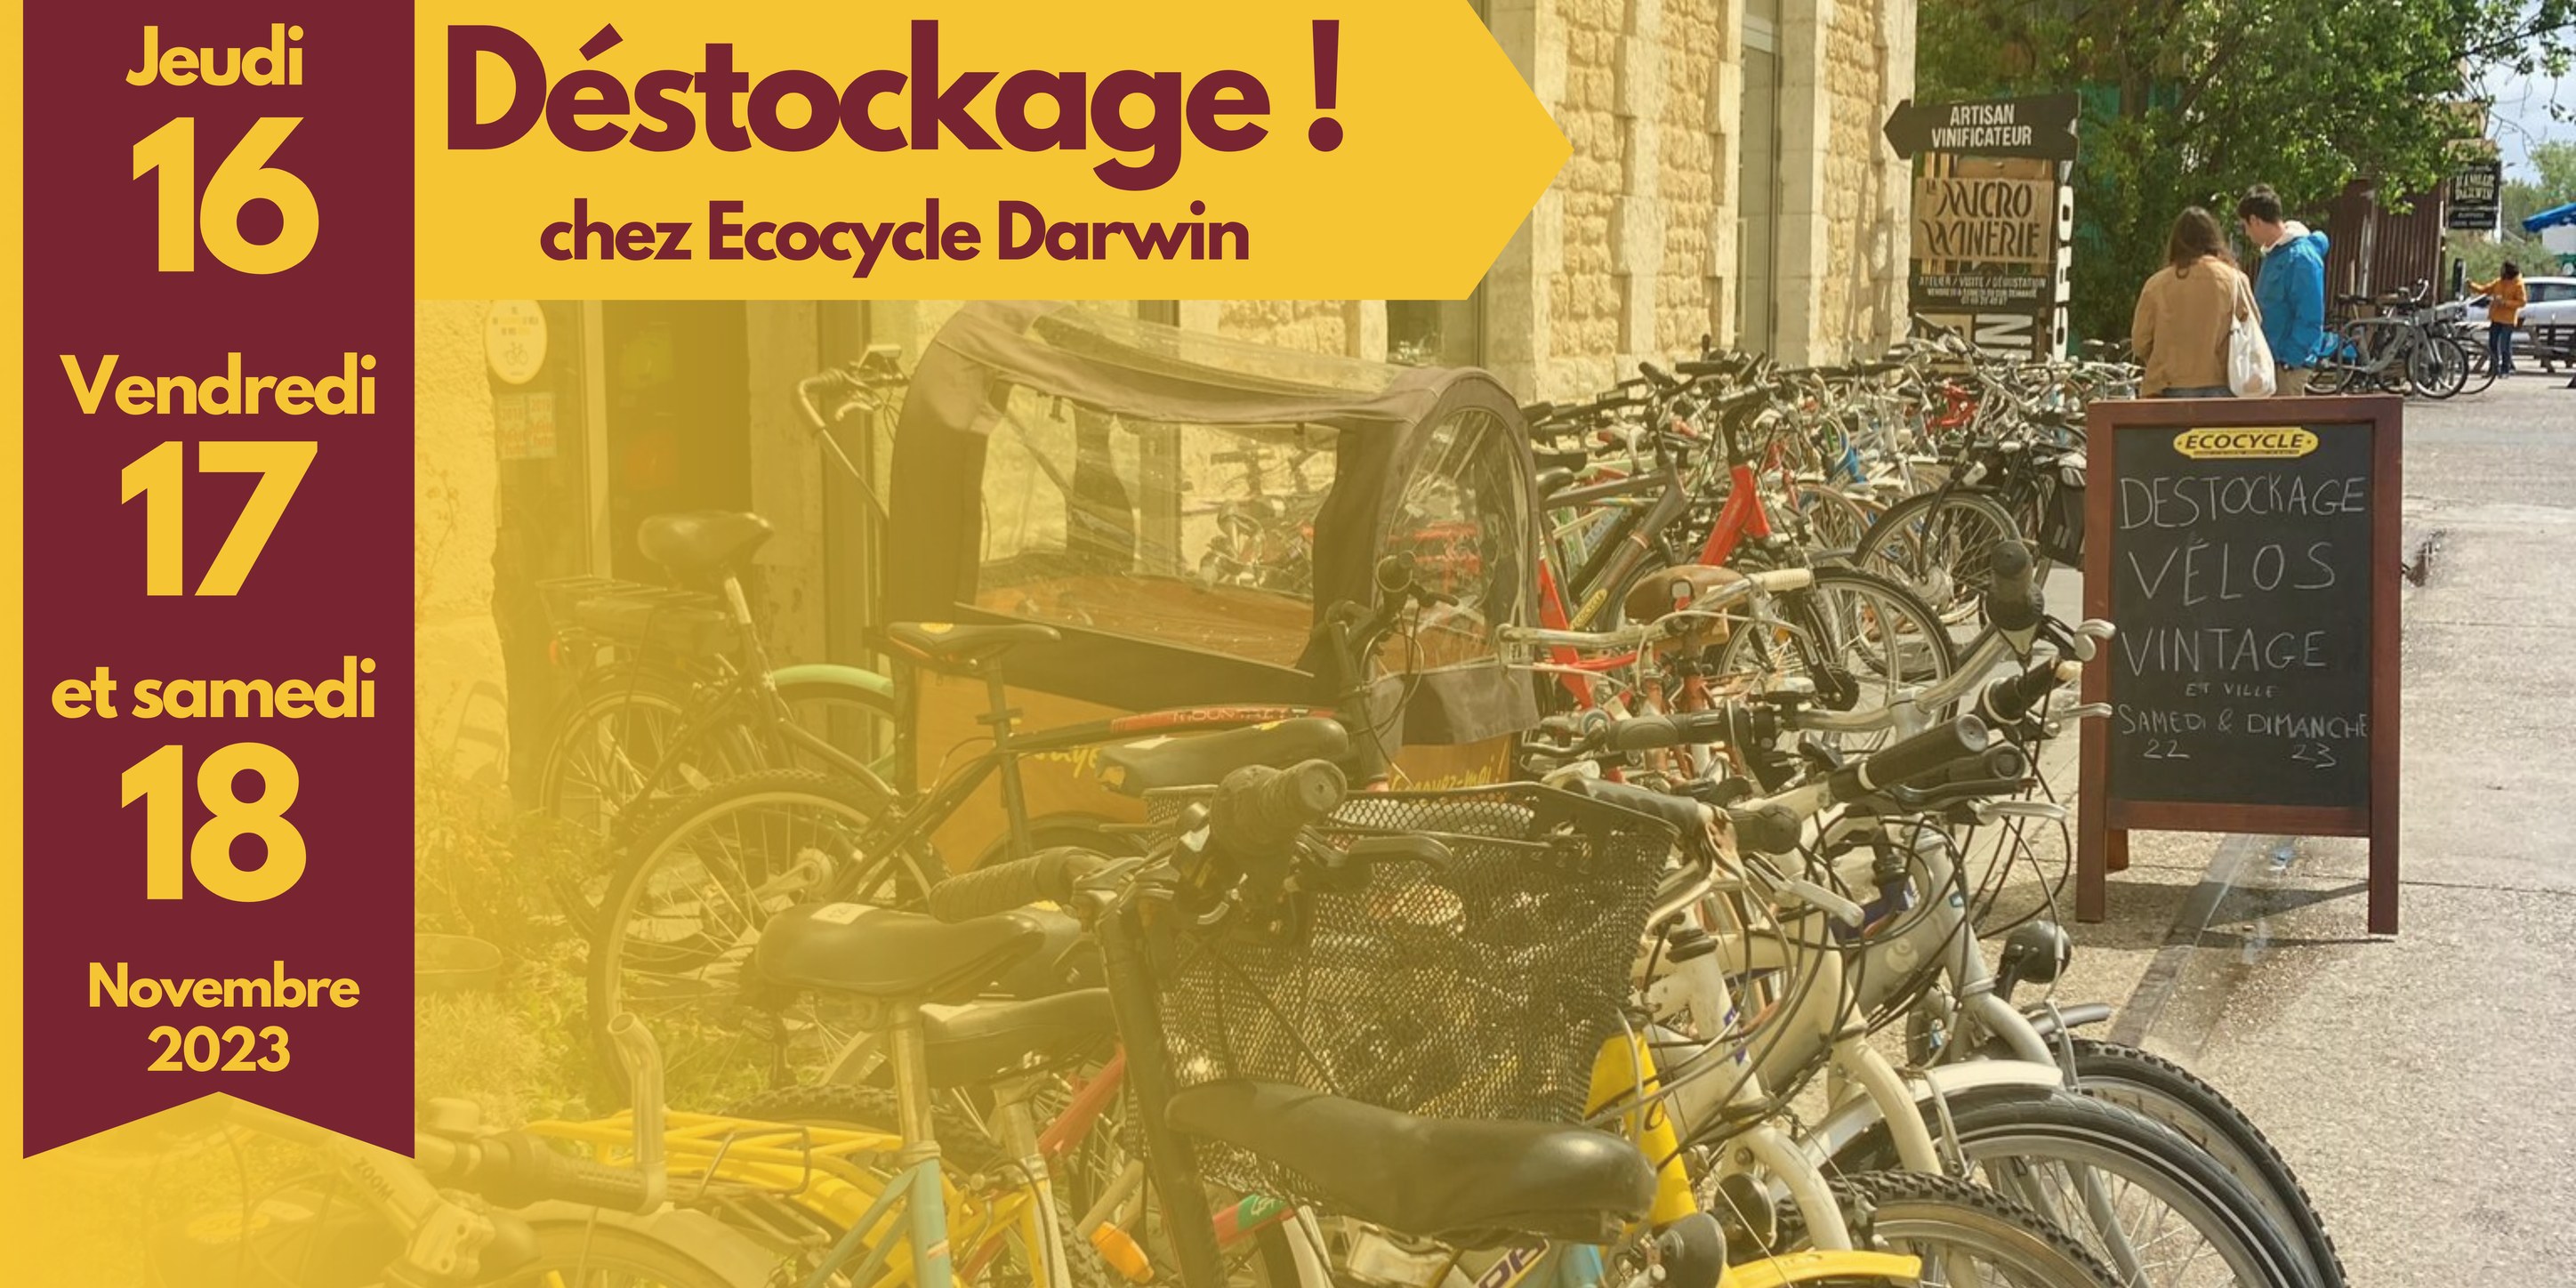 vente velos petits prix bordeaux darwin destockage ecocycle